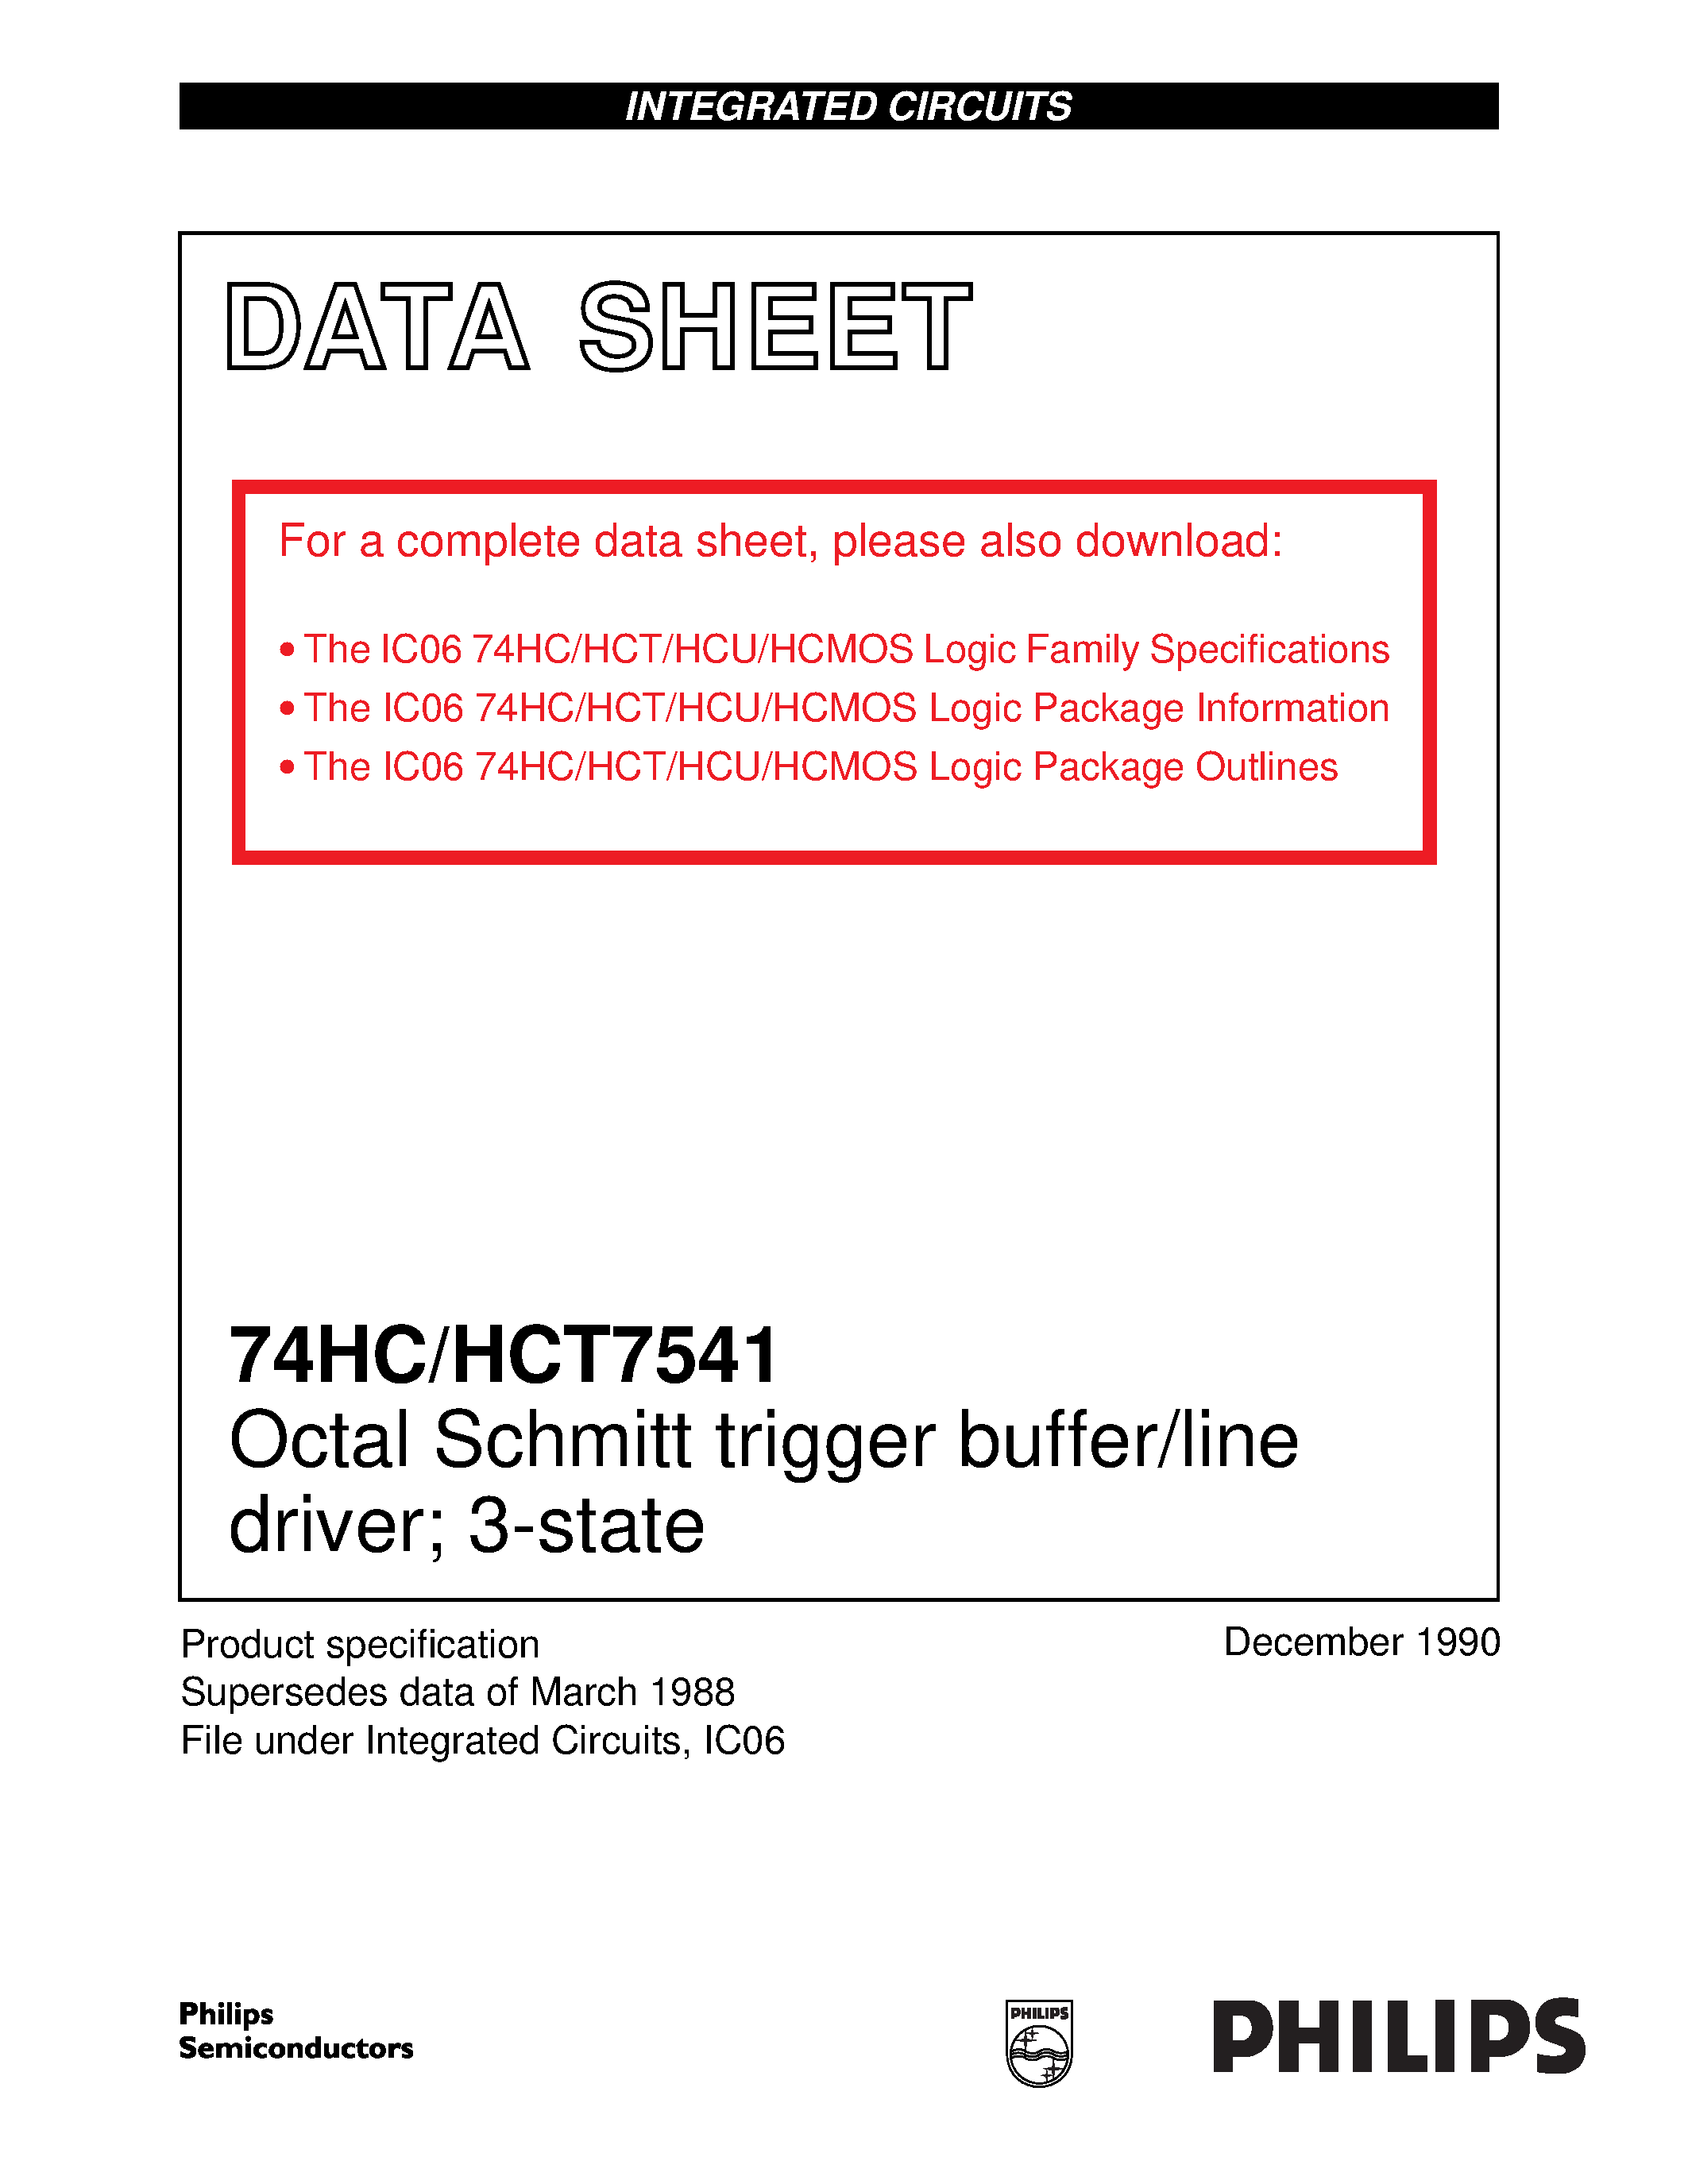 Даташит 74HCT7541 - Octal Schmitt trigger buffer/line driver; 3-state страница 1